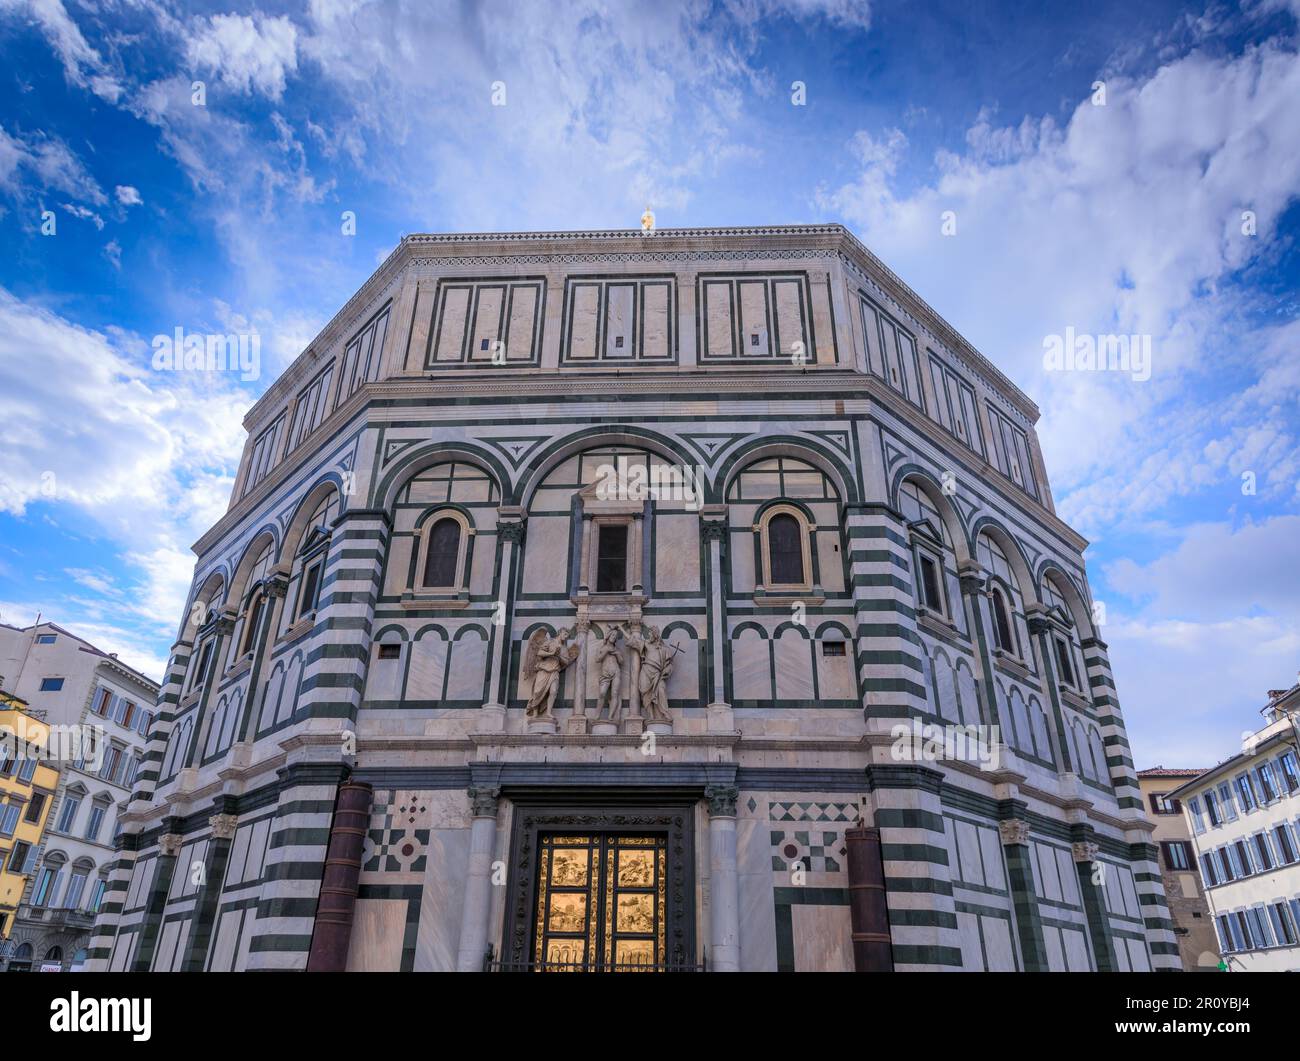 Le Baptistère de Florence en Italie. Le Baptistère de Saint-Jean est l'un des plus anciens bâtiments de Florence construits dans le St roman florentin Banque D'Images